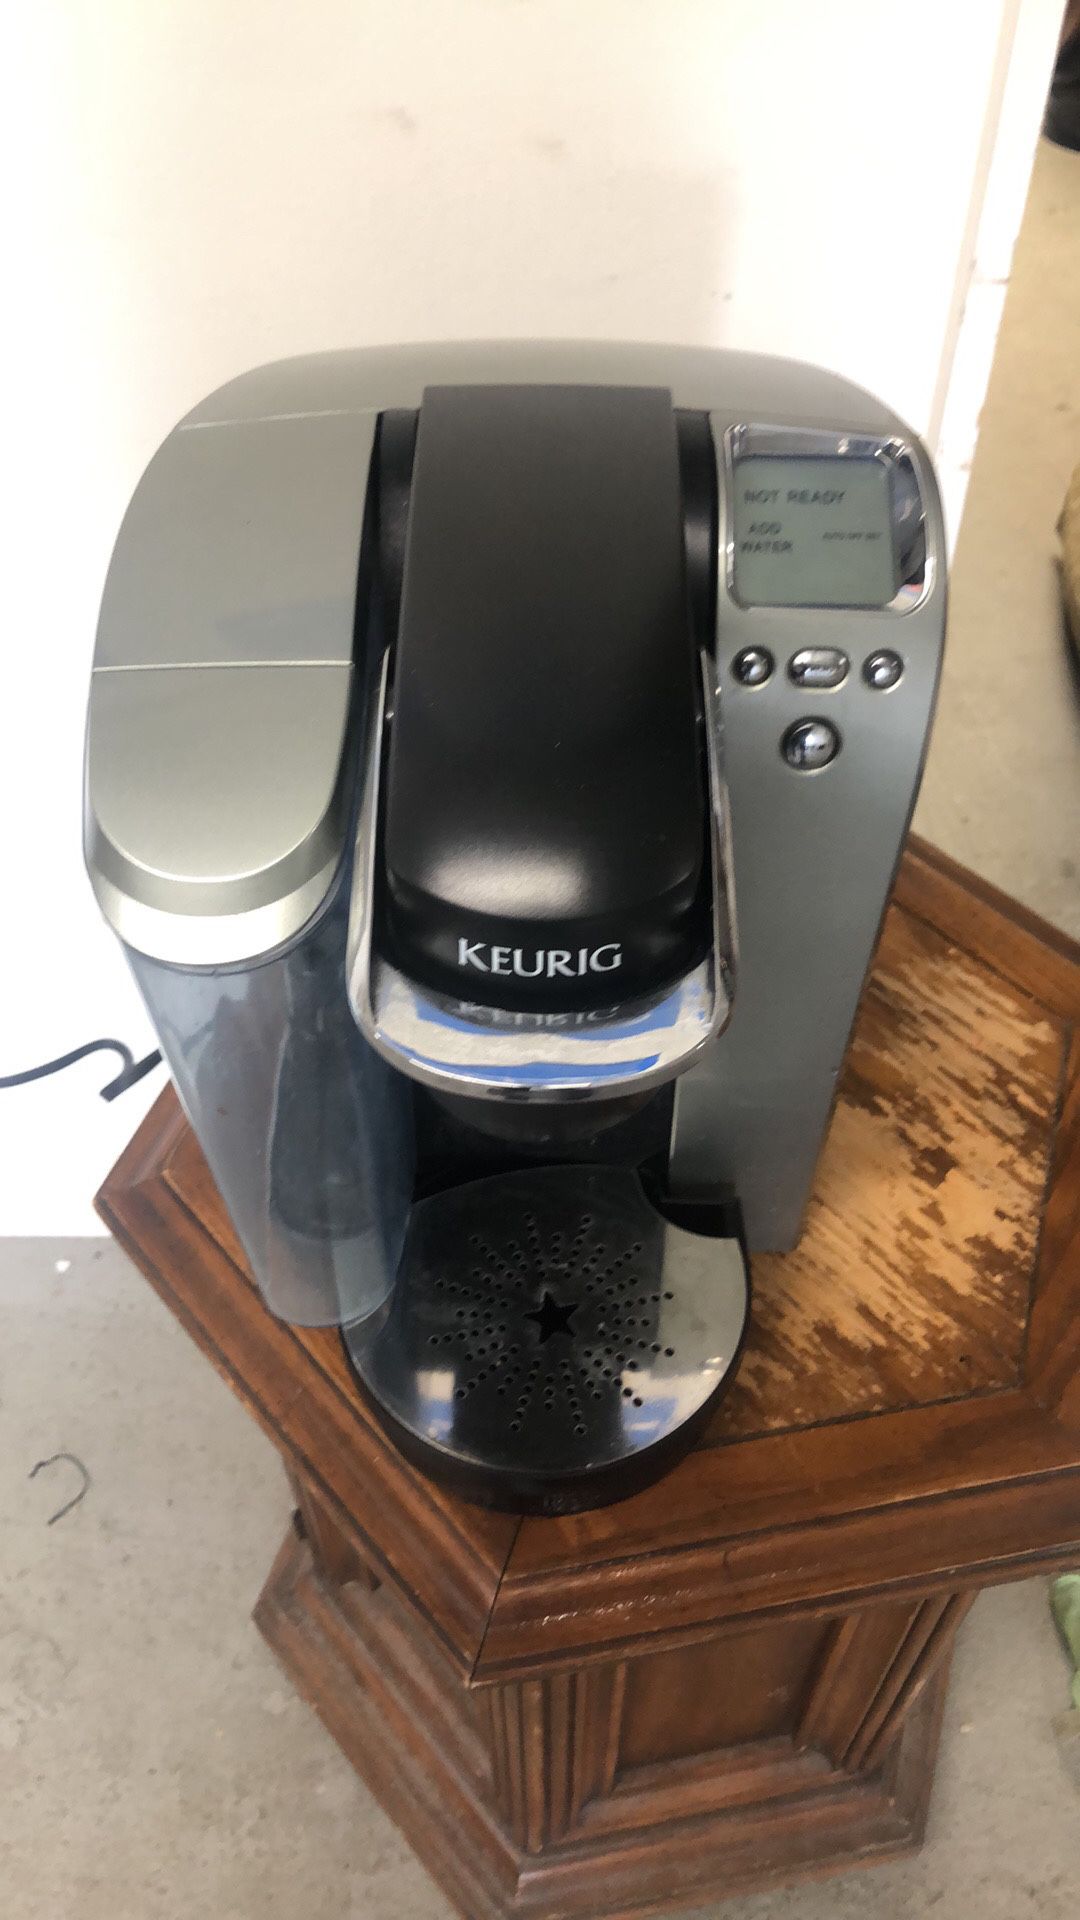 KEURIG COFFEE MAKER WORKS GREAT LIKE BRAND NEW